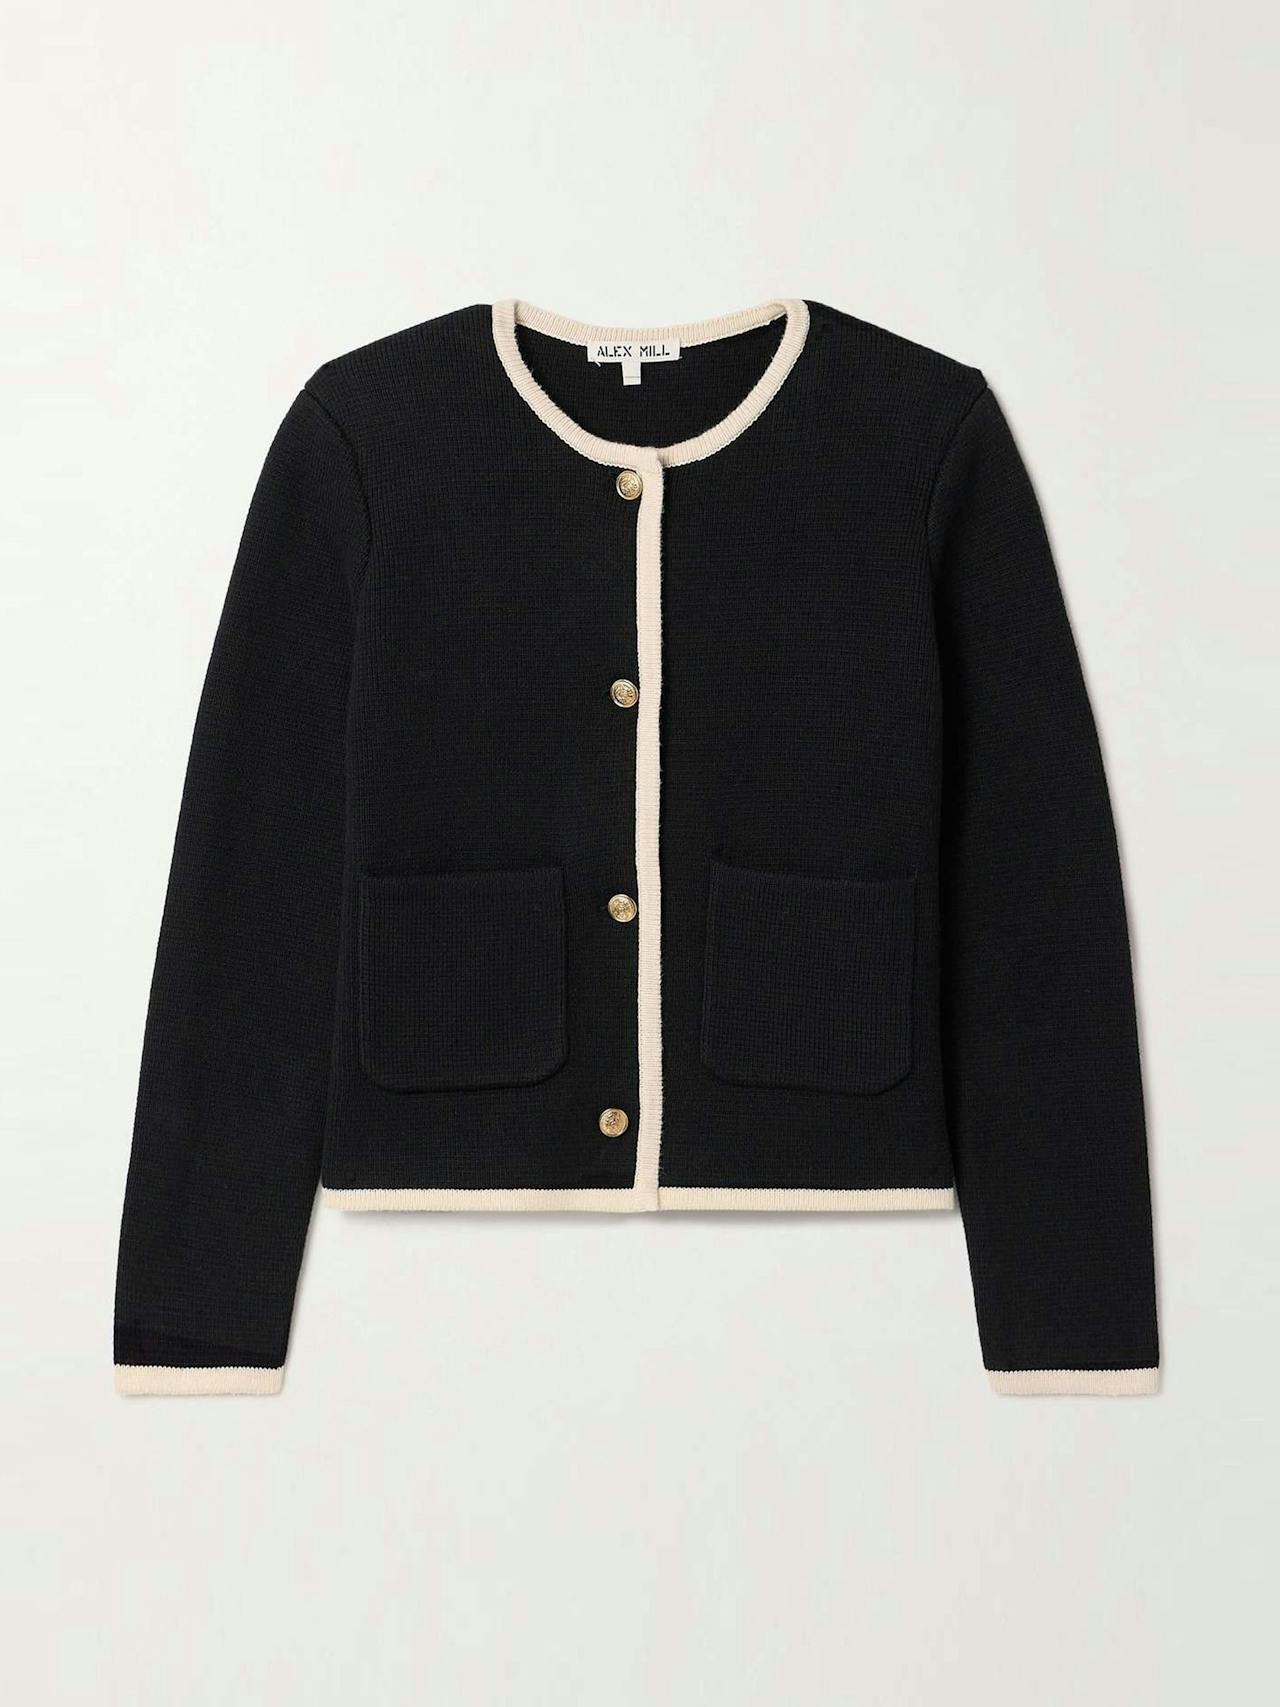 Paris cotton and cashmere-blend jacket